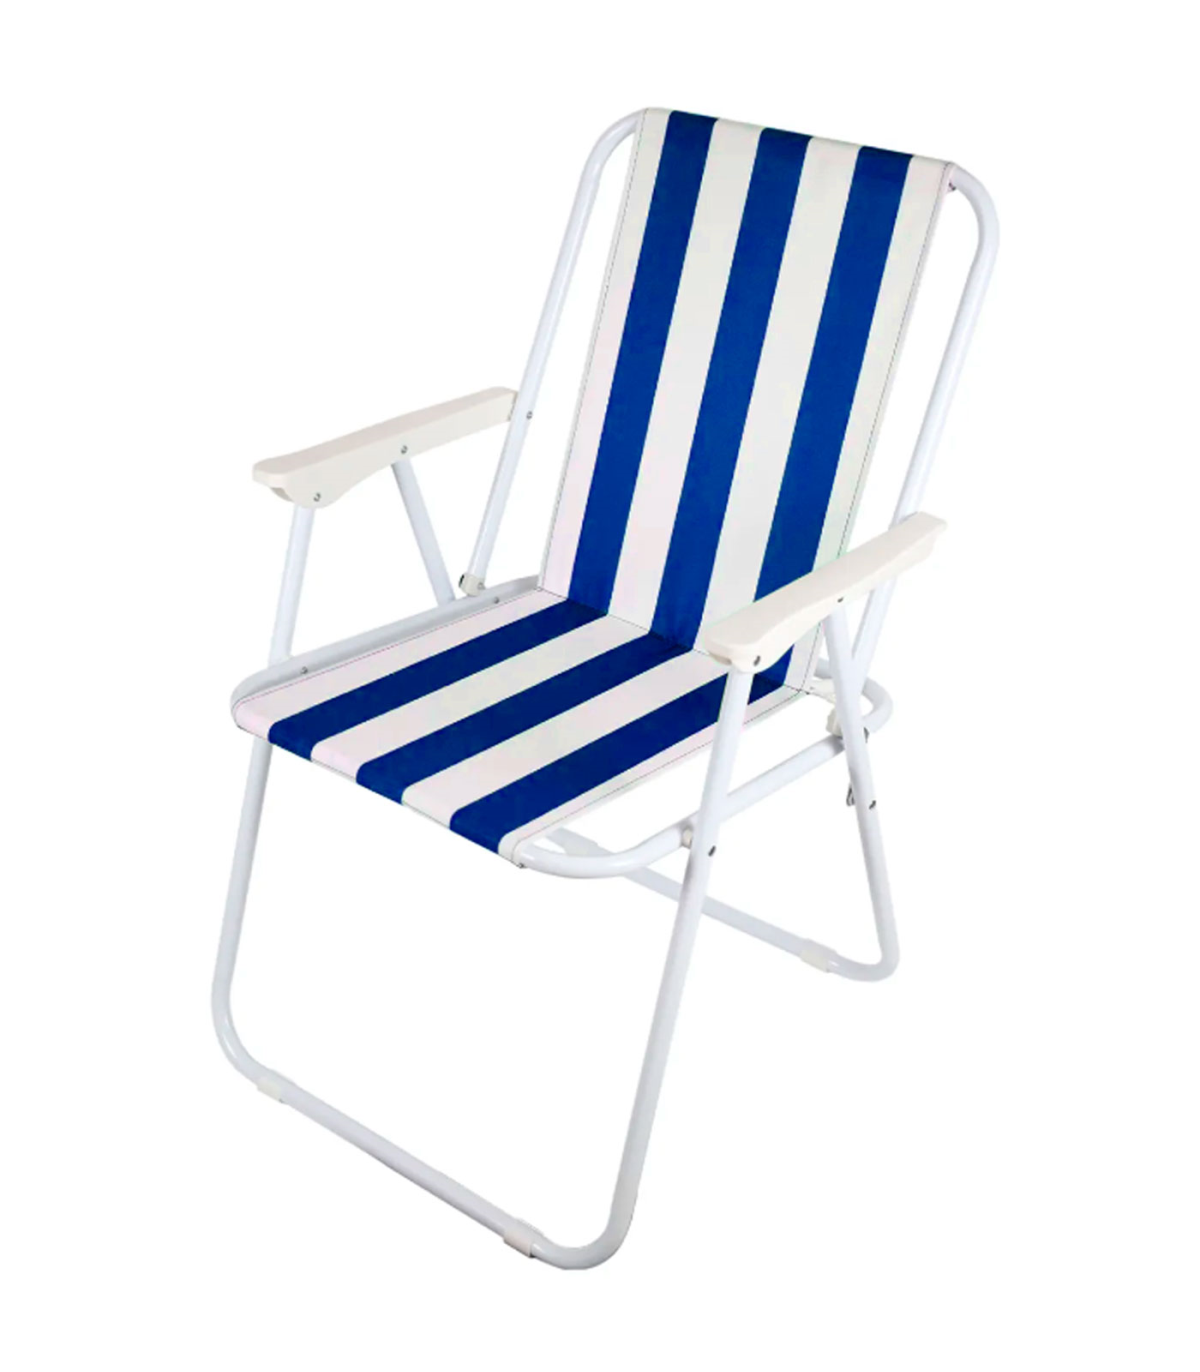 Tradineur - Silla de playa plegable, diseño a rayas, estructura metálica  blanca y asiento de tela, ligera y resistente, máx. 110